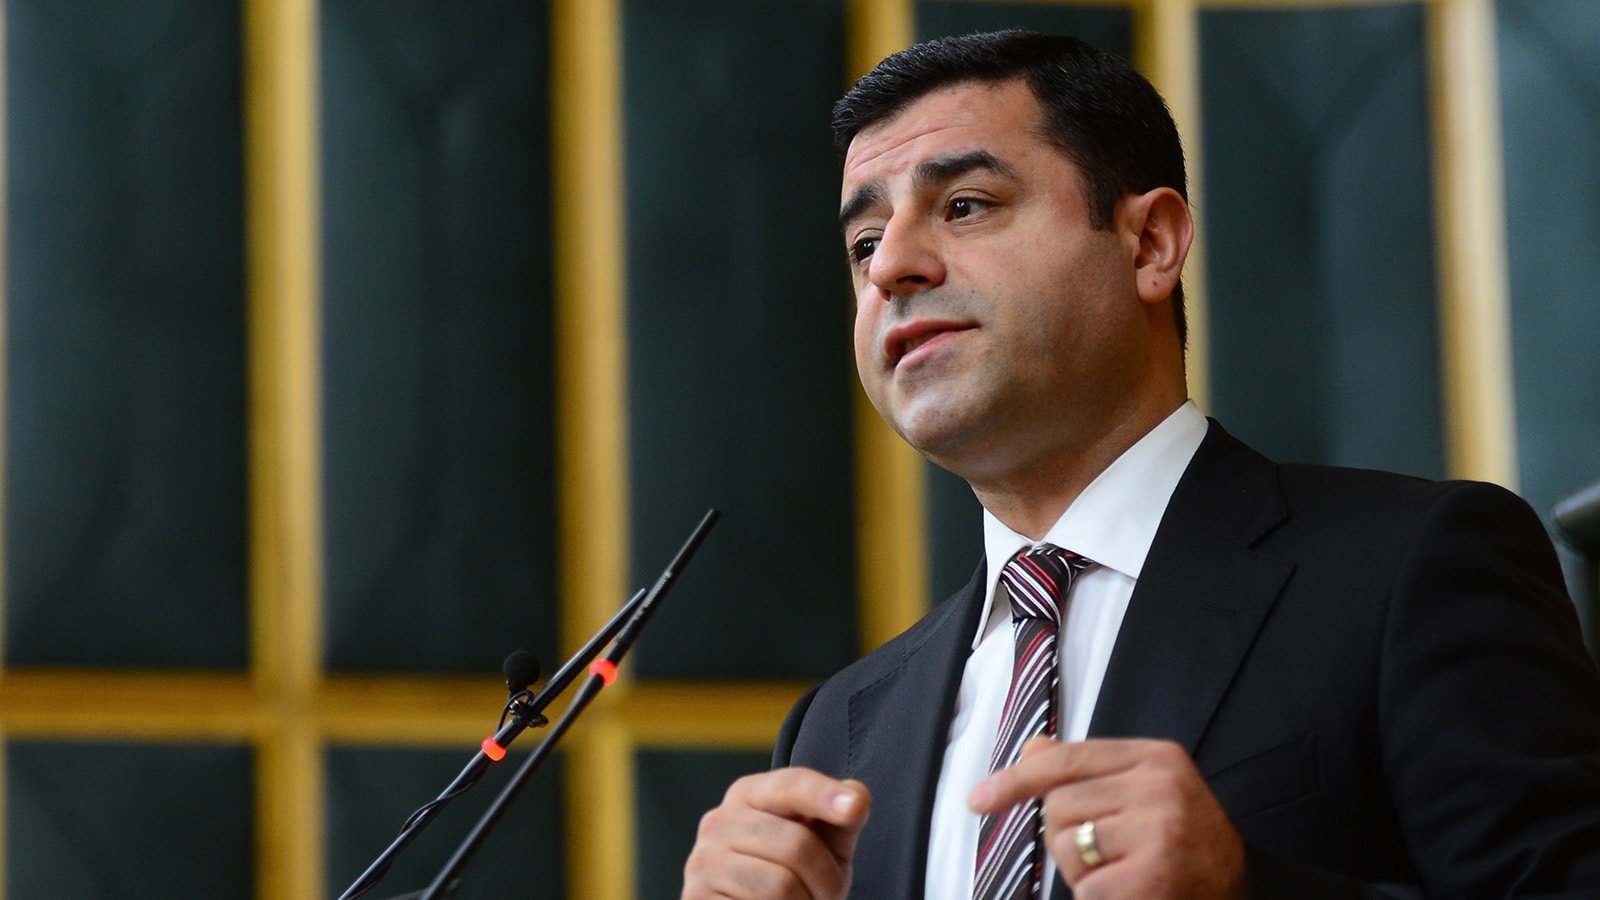 صلاح الدين دميرتاس، الزعيم الكردي الذي تحوّل إلى "رجل دولة"، والذي قد يرفع حزبه إلى مرتبة الحزب الثالث في تركيا